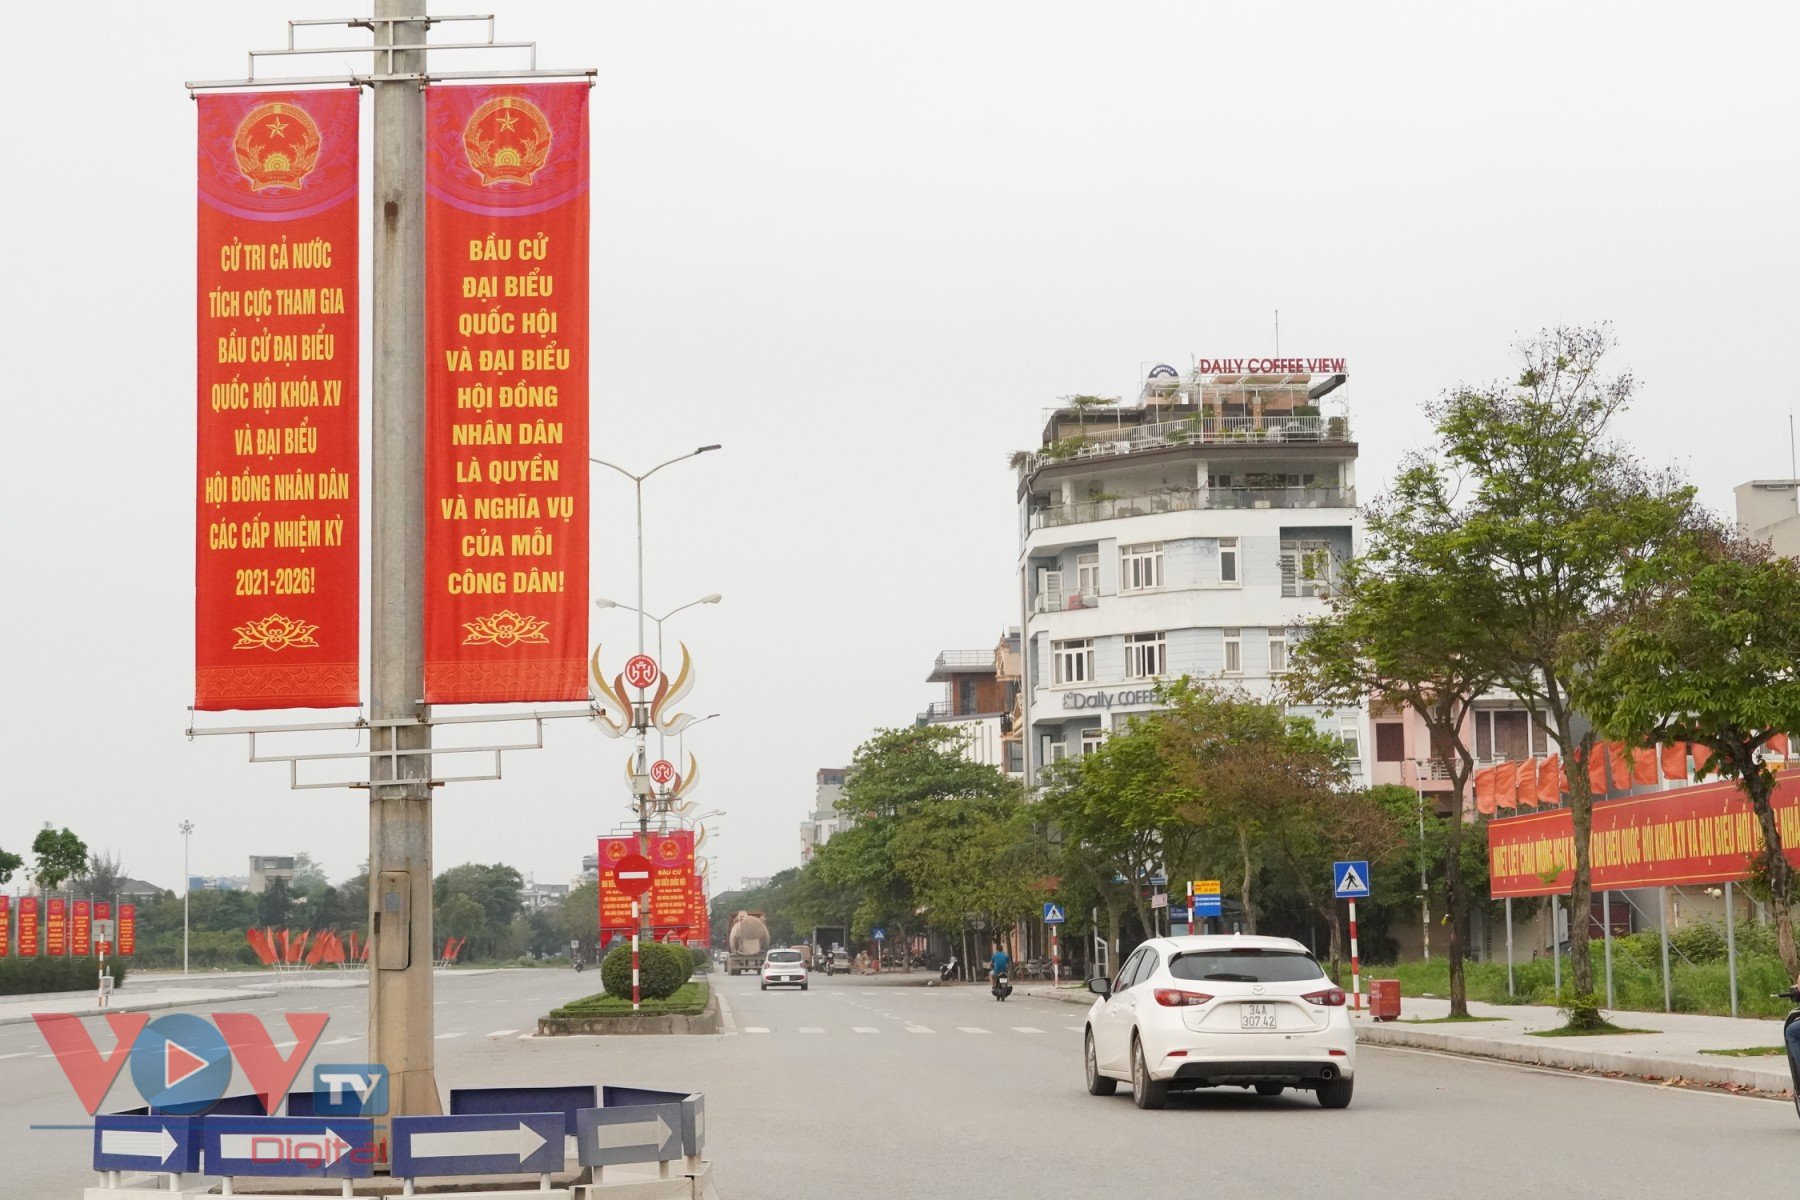 Các tuyến phố của tỉnh Hải Dương được trang hoàng bằng hệ thống pano, áp phích, khẩu hiệu tuyên truyền về cuộc bầu cử